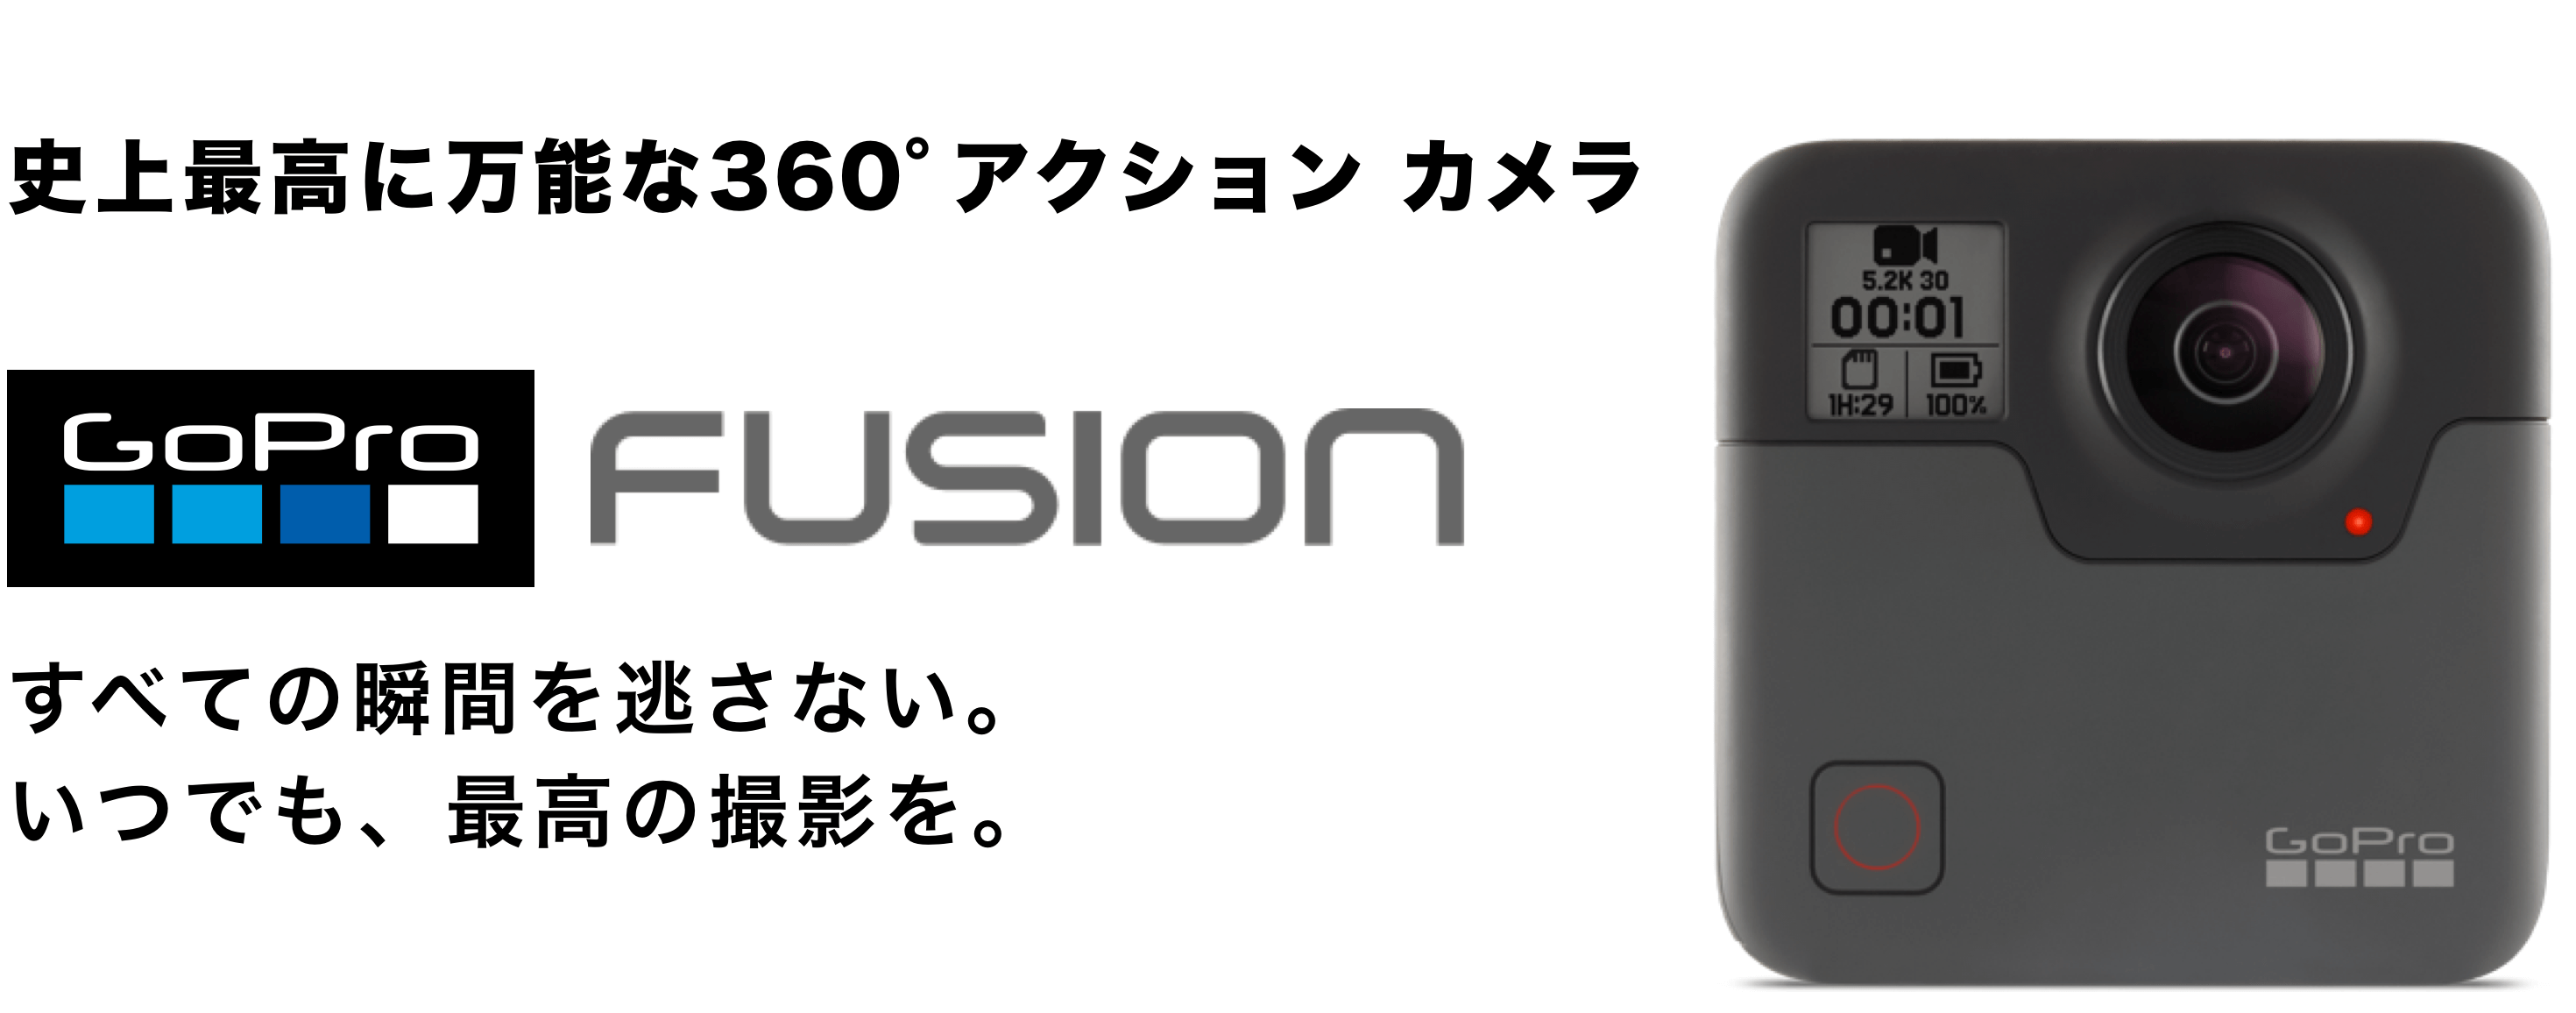 GoPro fusion